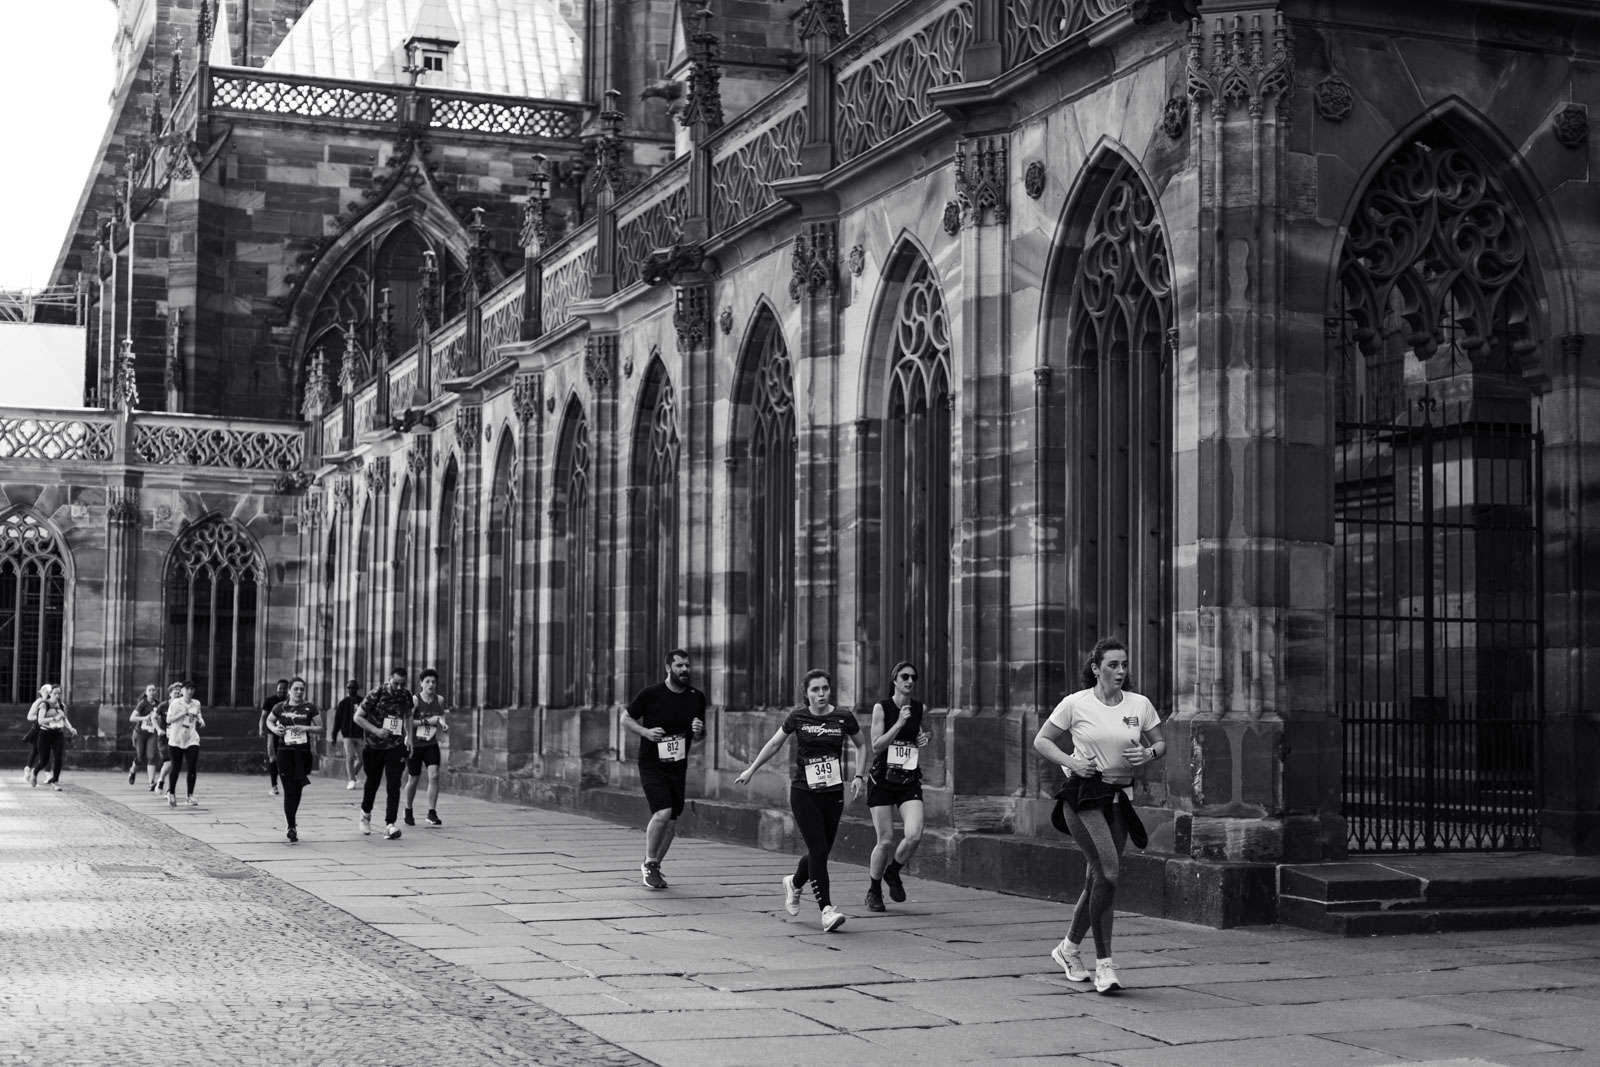 Marathon runners in Strasbourg